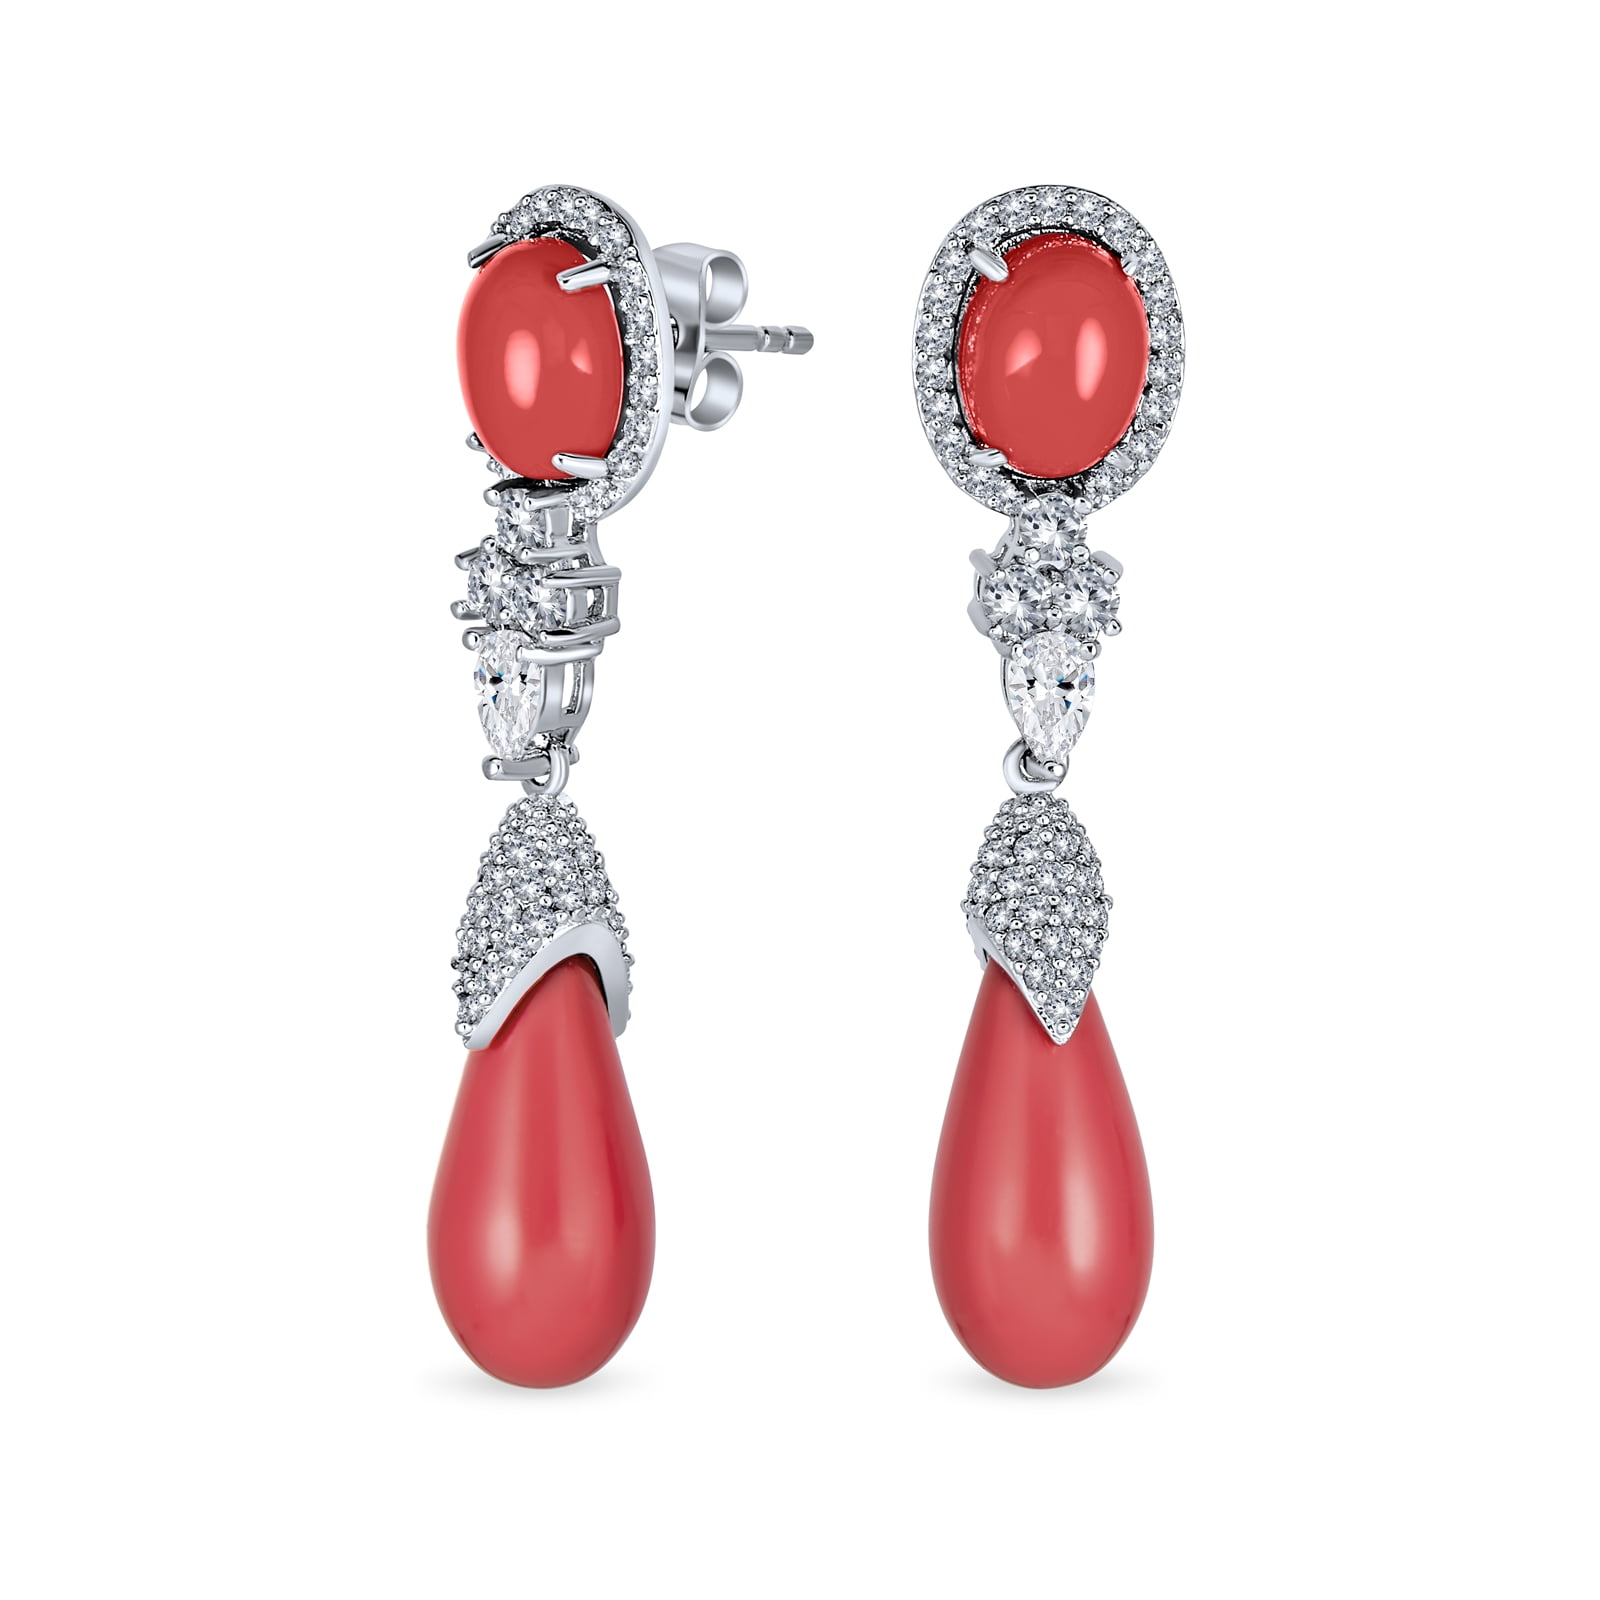 Orange foil earrings handmade resin earrings gift for her coral statement earrings summer earrings Coral dangle earrings drop earrings